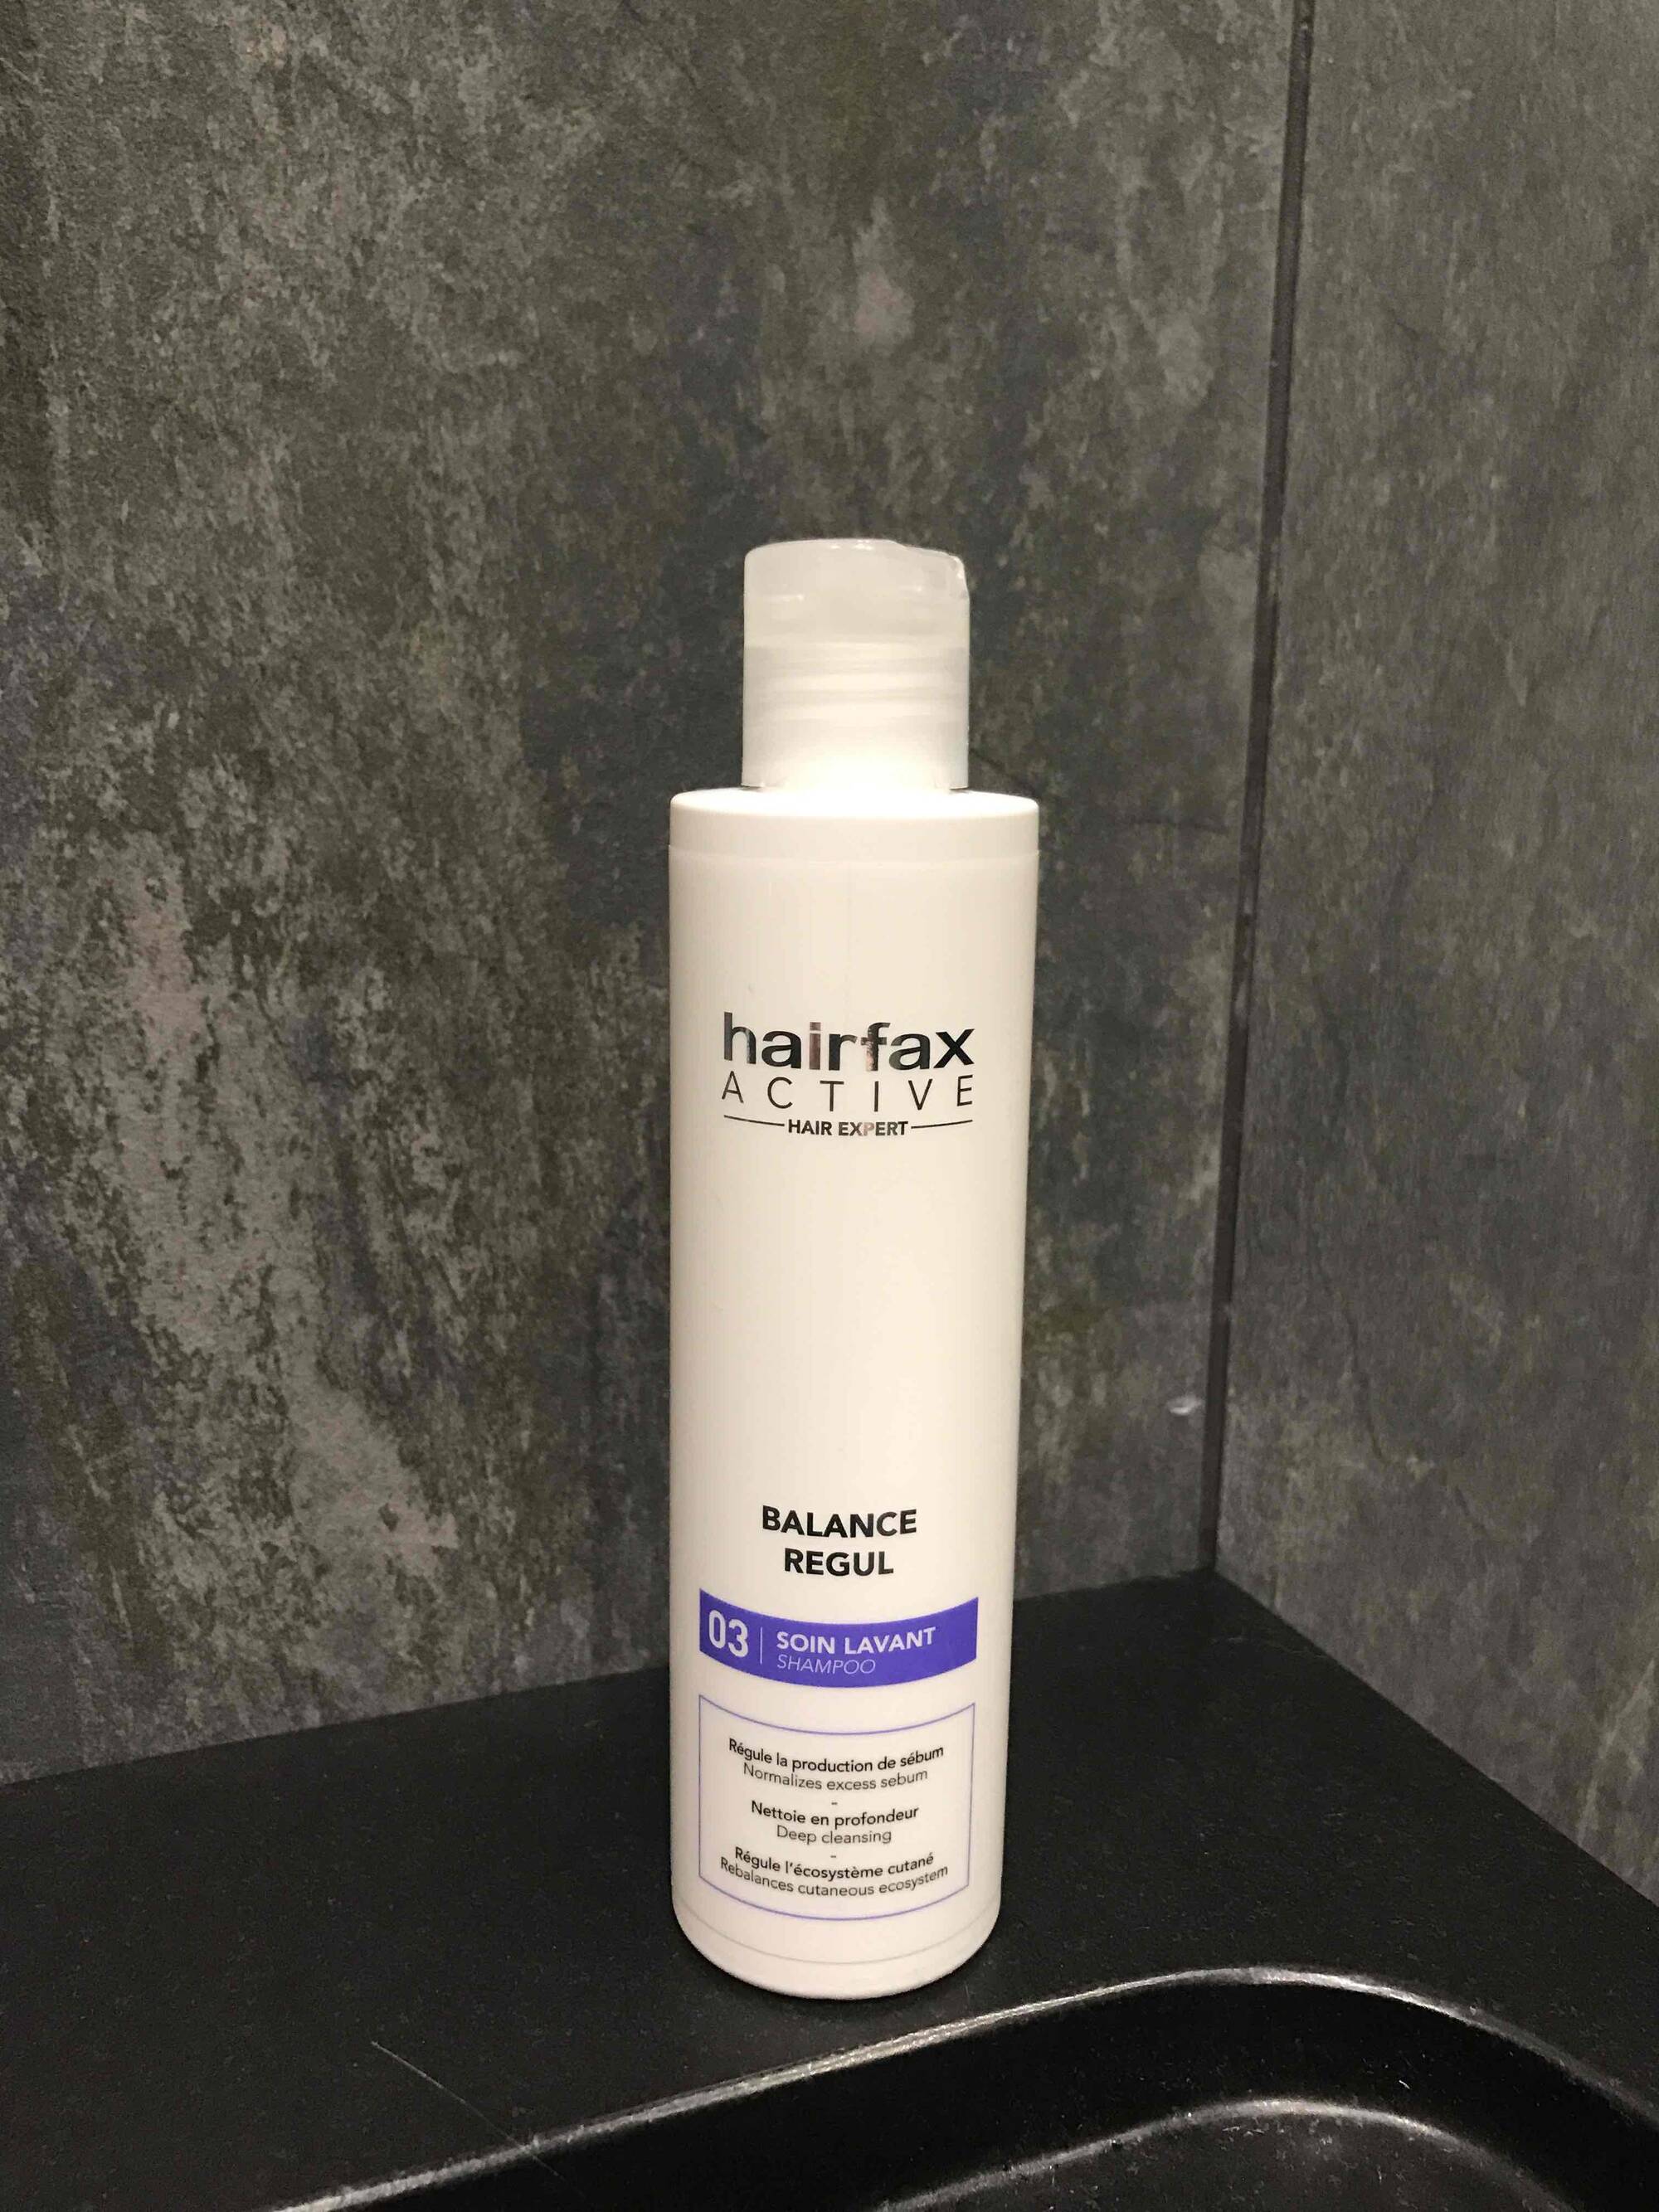 HAIRFAX - Balance regul - 03 Soin lavant shampoo